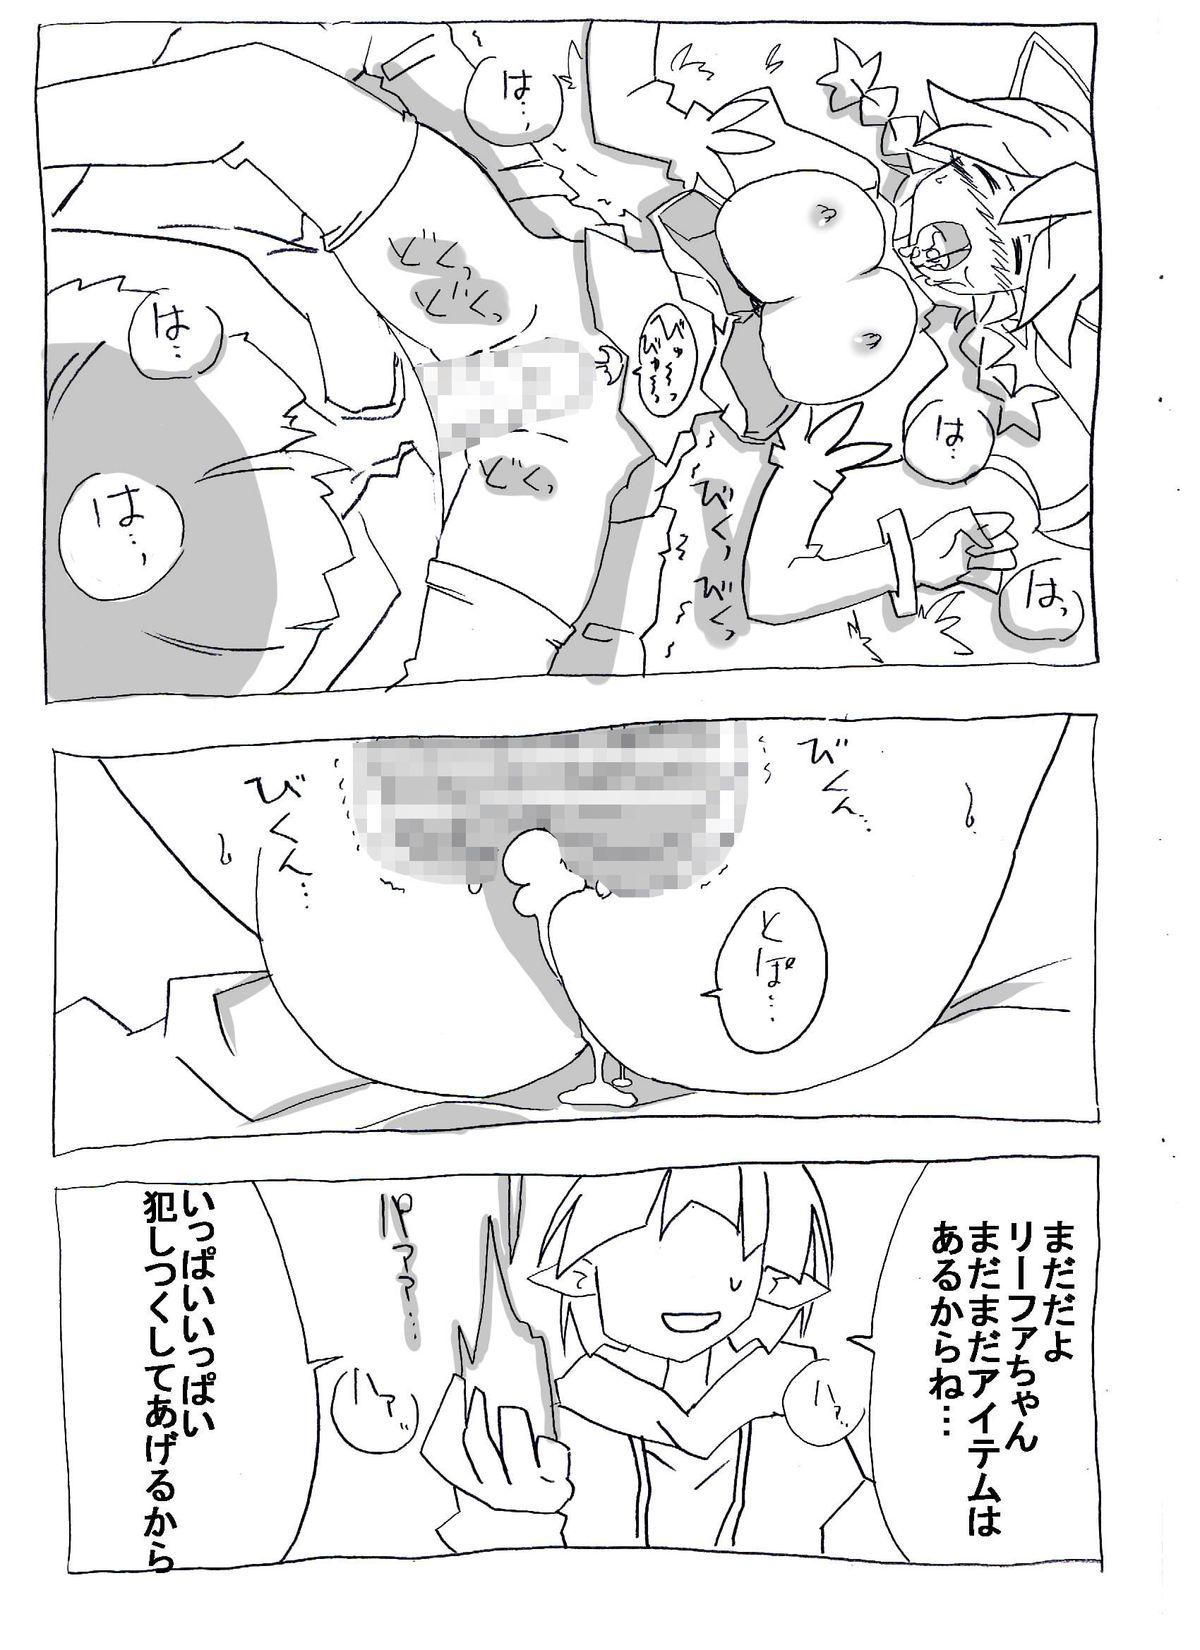 Brocon Imouto wo Jikan Teishi ￫ Minkan ￫ Netori Manga 12